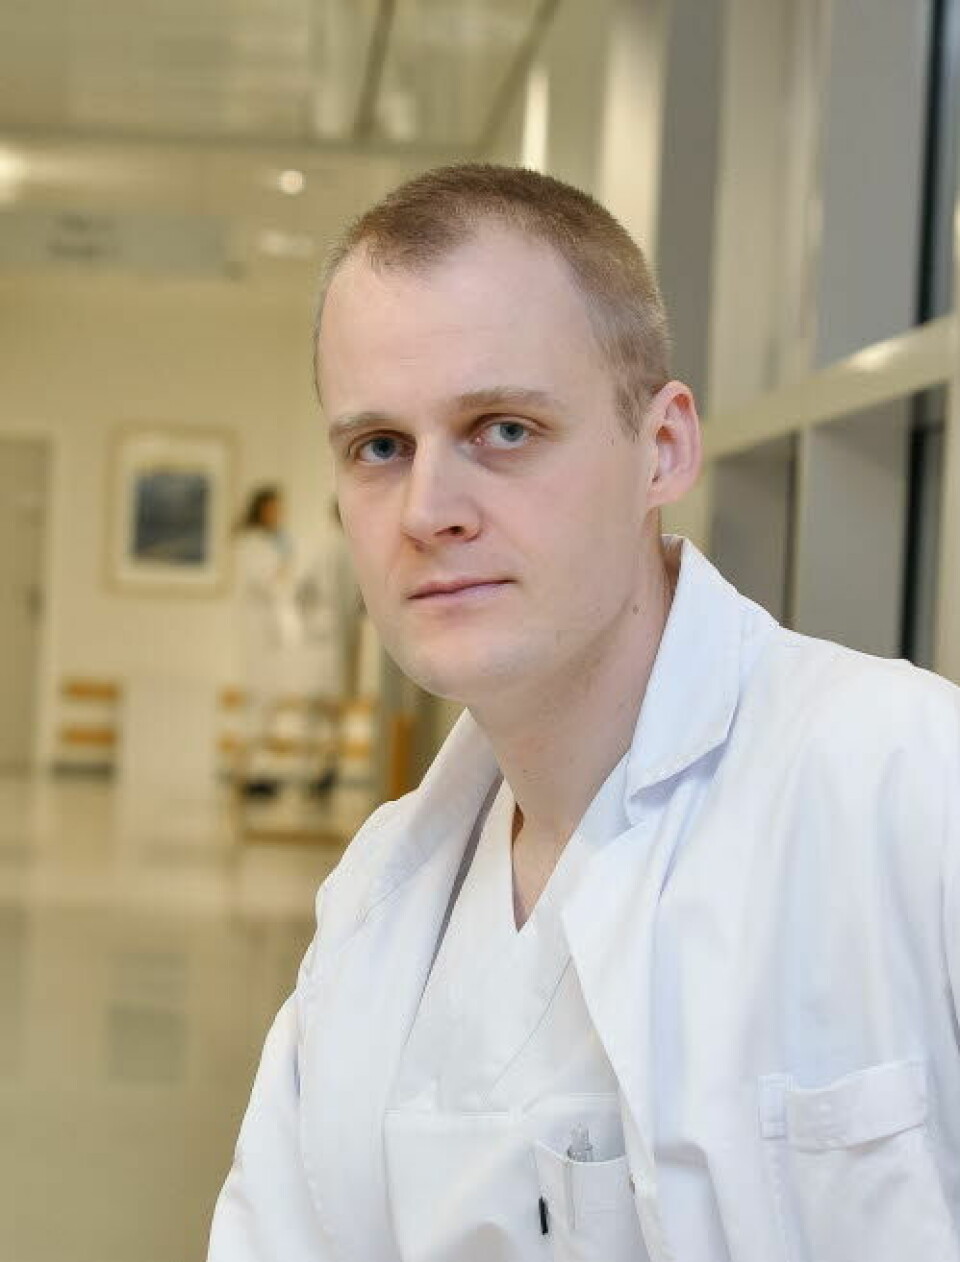 Medisinsk fagsjef Haakon Lindekleiv ved Universitetssykehuset Nord-Norge (UNN).

            
                Foto: Per-Christian Johansen/UNN